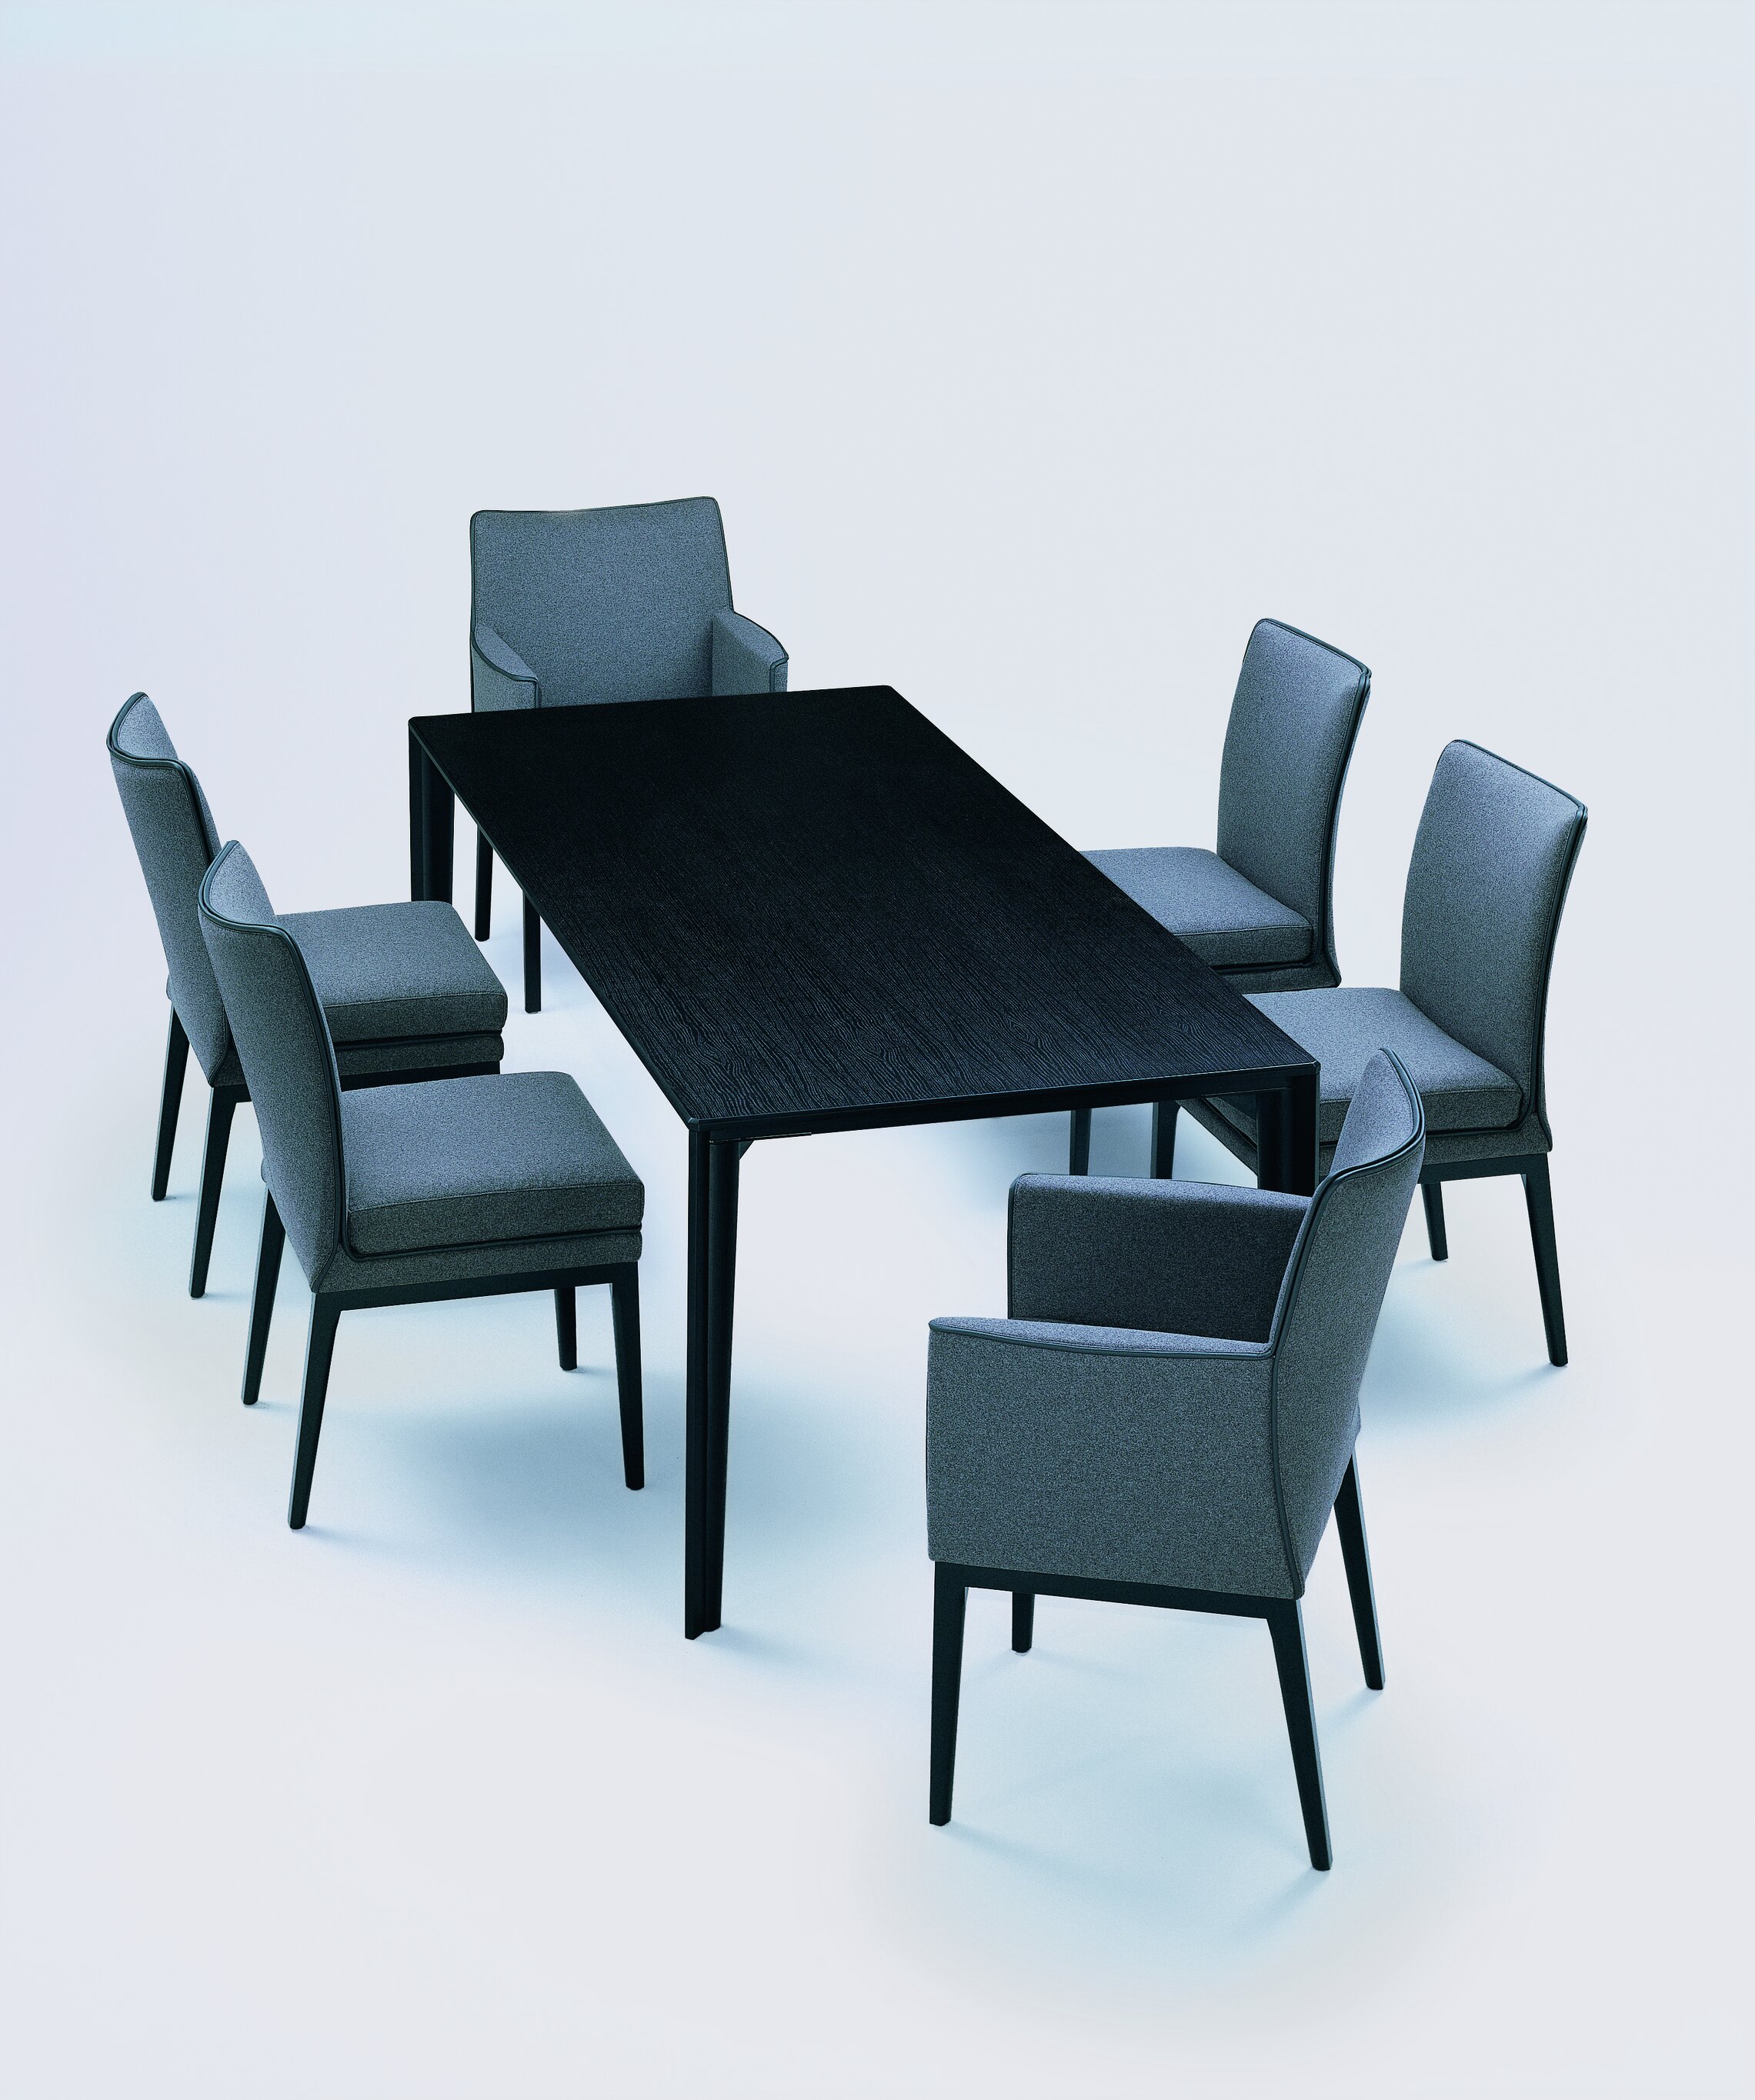 mehrere dunkelgrau bezogene Sedan Stühle gruppieren sich um schwarzen Tisch